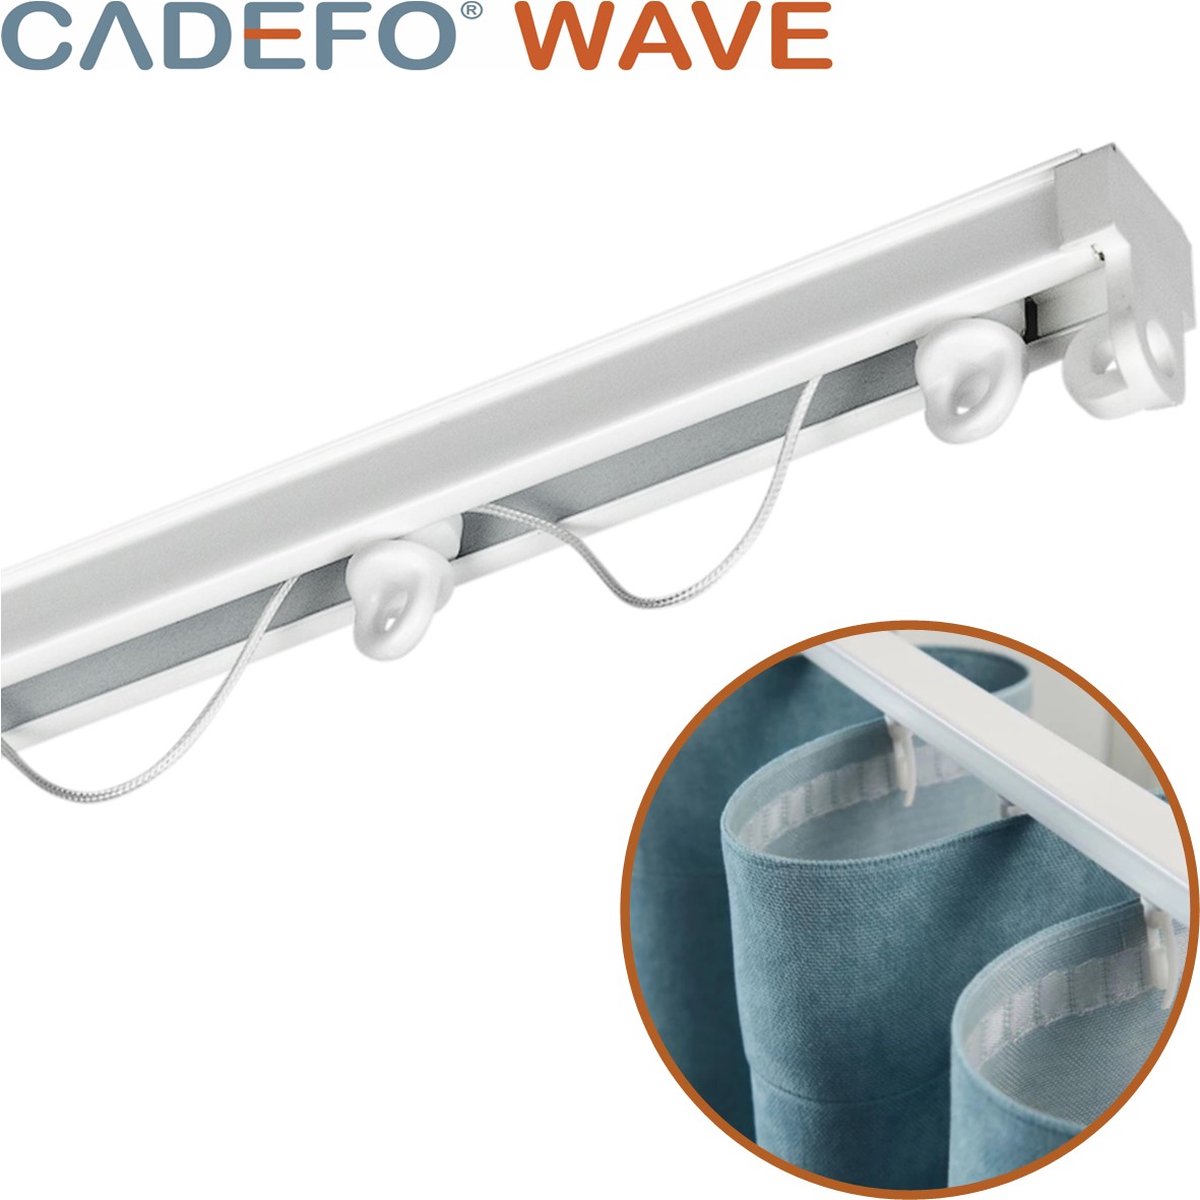 CADEFO WAVE (451 - 500 cm) Gordijnrails - Compleet op maat! - UIT 1 STUK - Leverbaar tot 6 meter - Plafondbevestiging - Lengte 476 cm